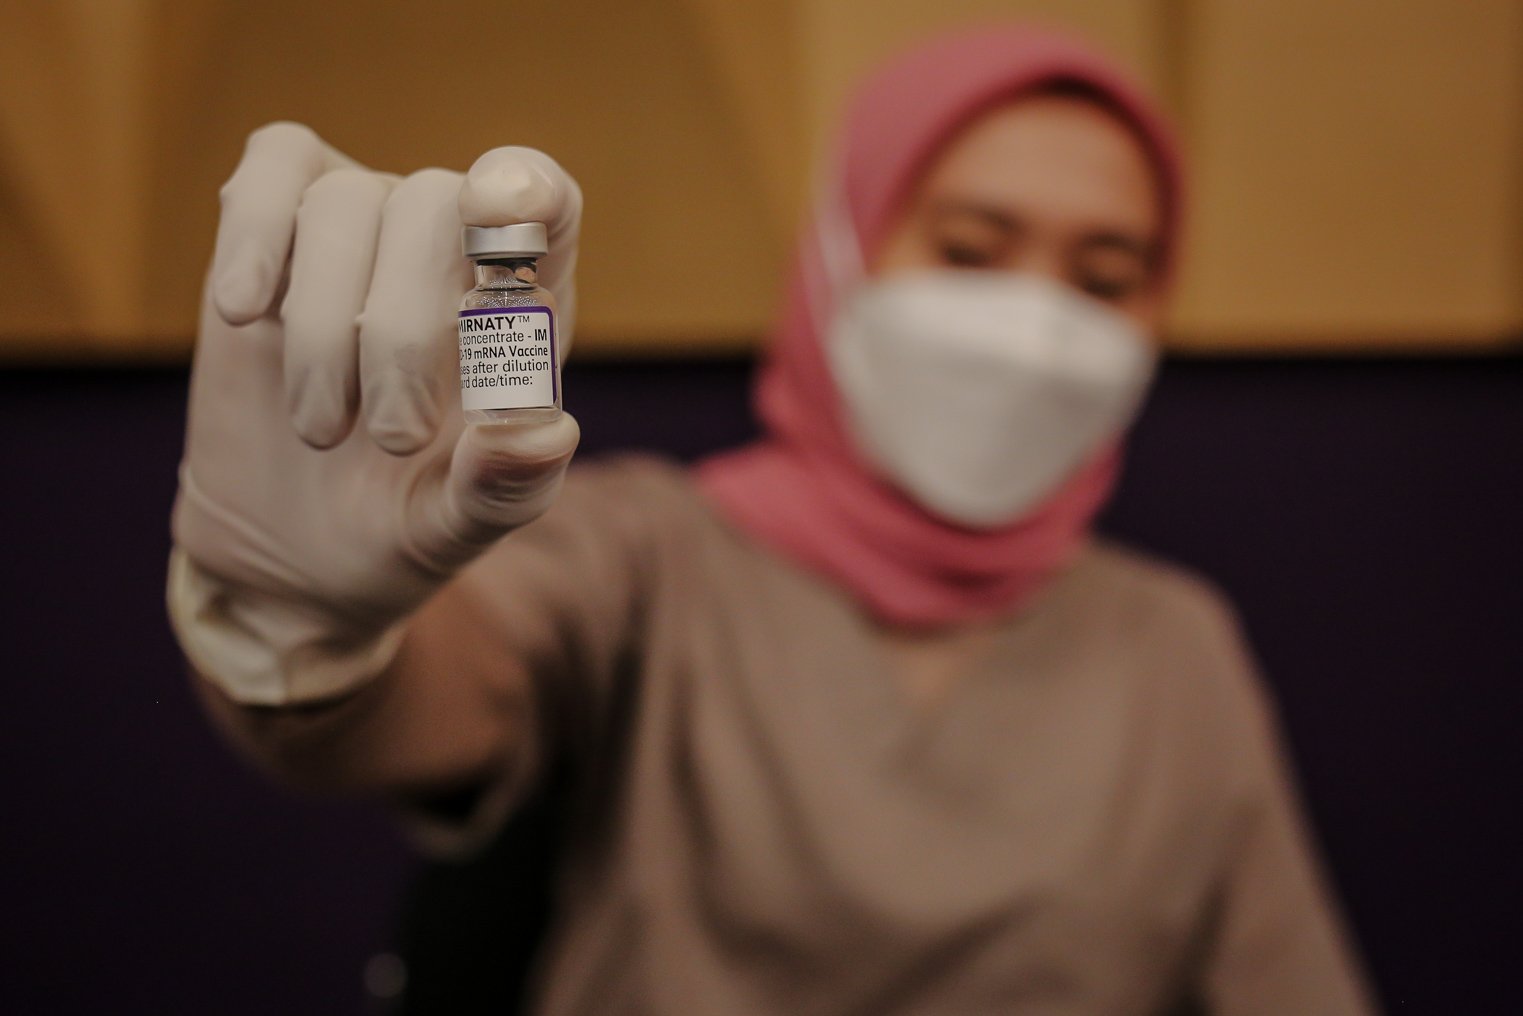 Petugas kesehatan menunjukkan vaksin booster saat penyuntikan vaksin di Mal Kota Kasablanka, Jakarta, Rabu (26/1/2022). Vaksin Booster yang disediakan adalah vaksin jenis Pfizer, berlaku bagi peserta yang sudah vaksin lengkap hingga dosis ke-2 dengan jenis vaksin Sinovac atau AstraZeneca, telah menerima tiket vaksin ke-3 pada aplikasi PeduliLindungi, dan berusia 18 tahun ke atas.